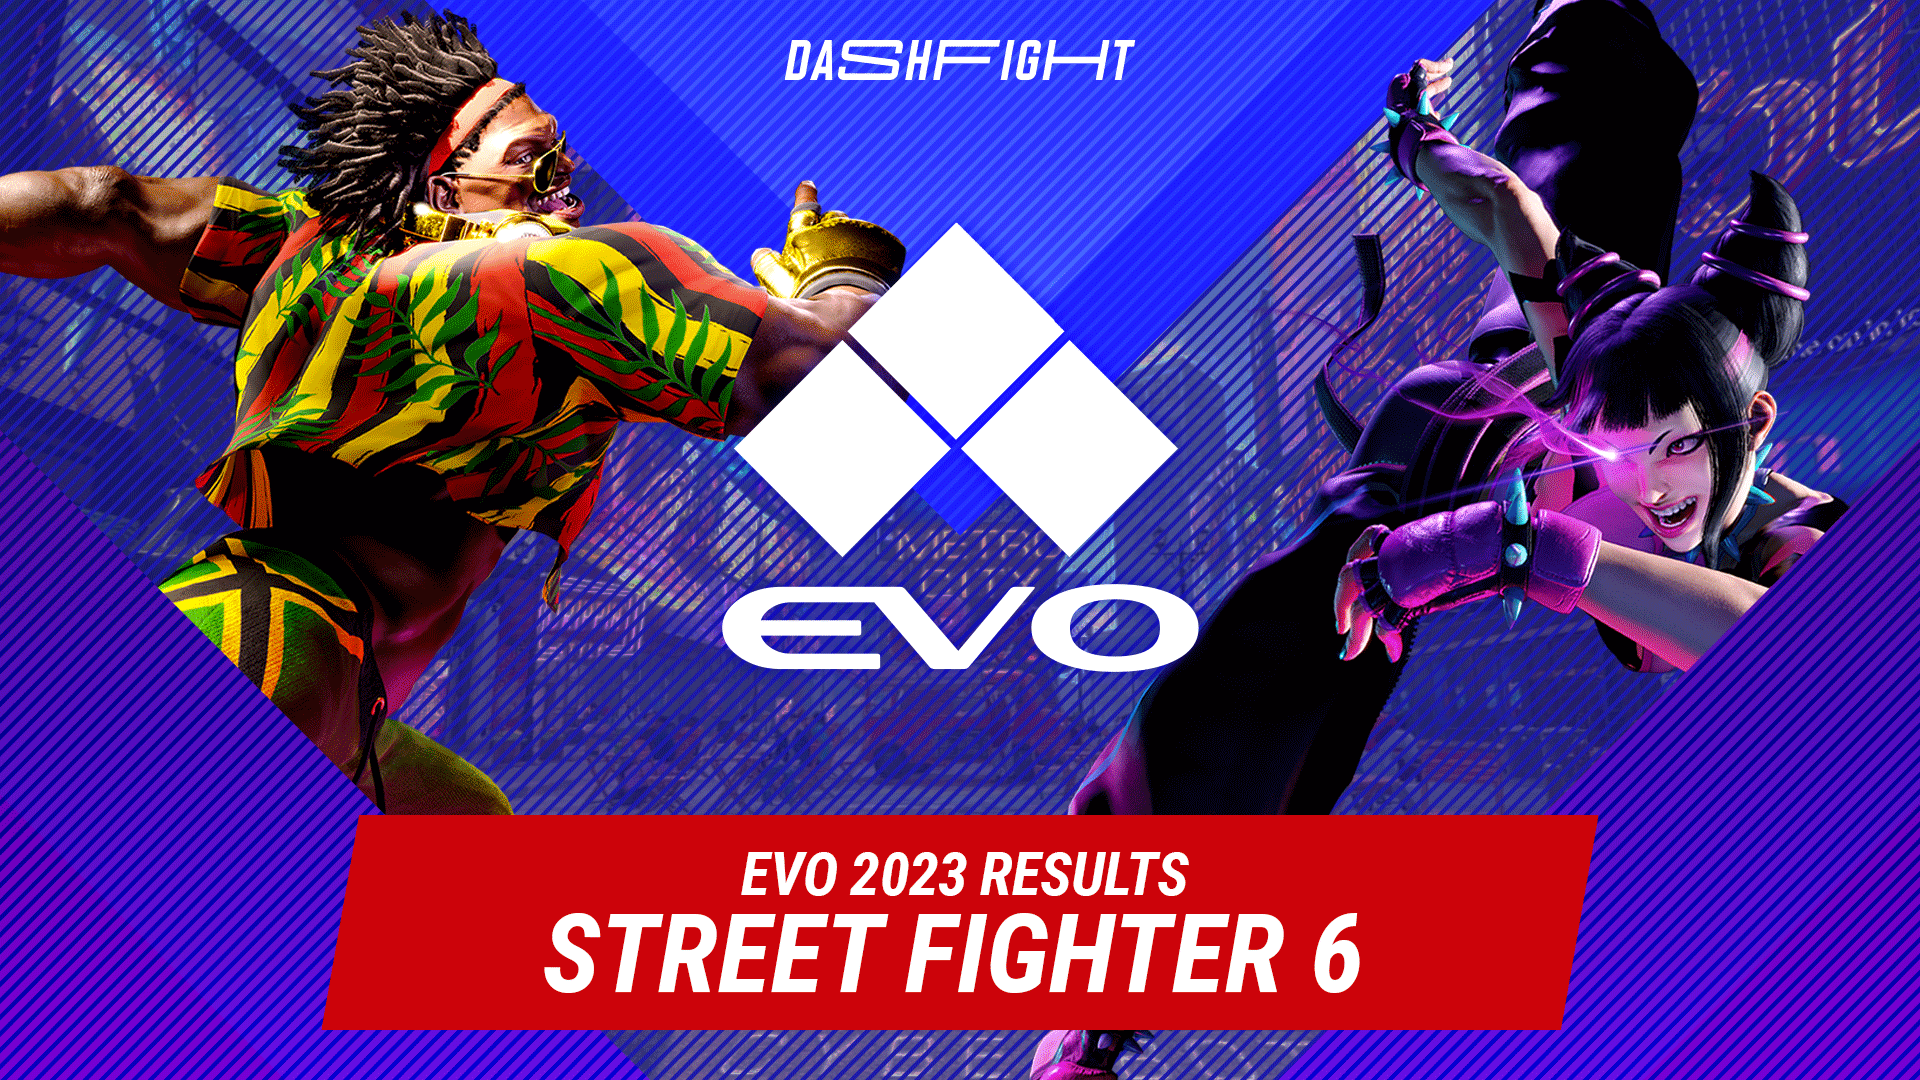 Evo 2023 Street Fighter 6 Results